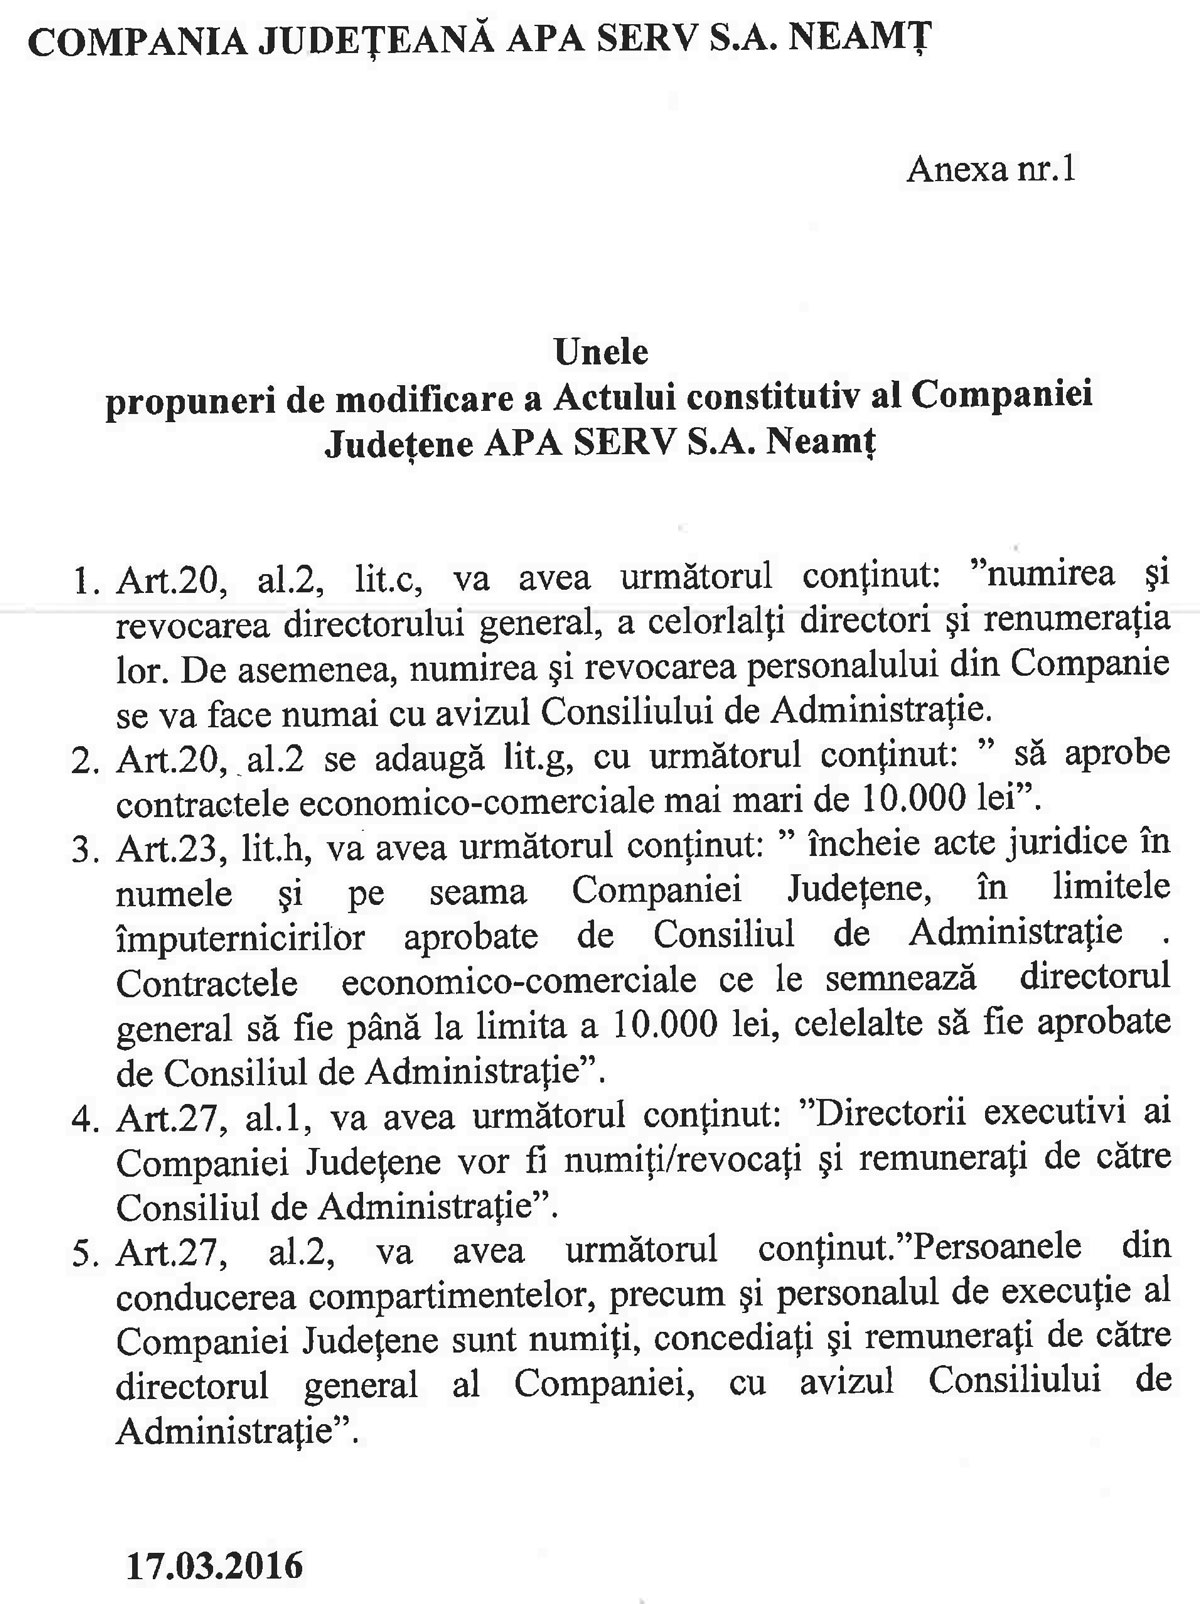 Propuneri-modificare-a--actului-constitutiv-al-C.J